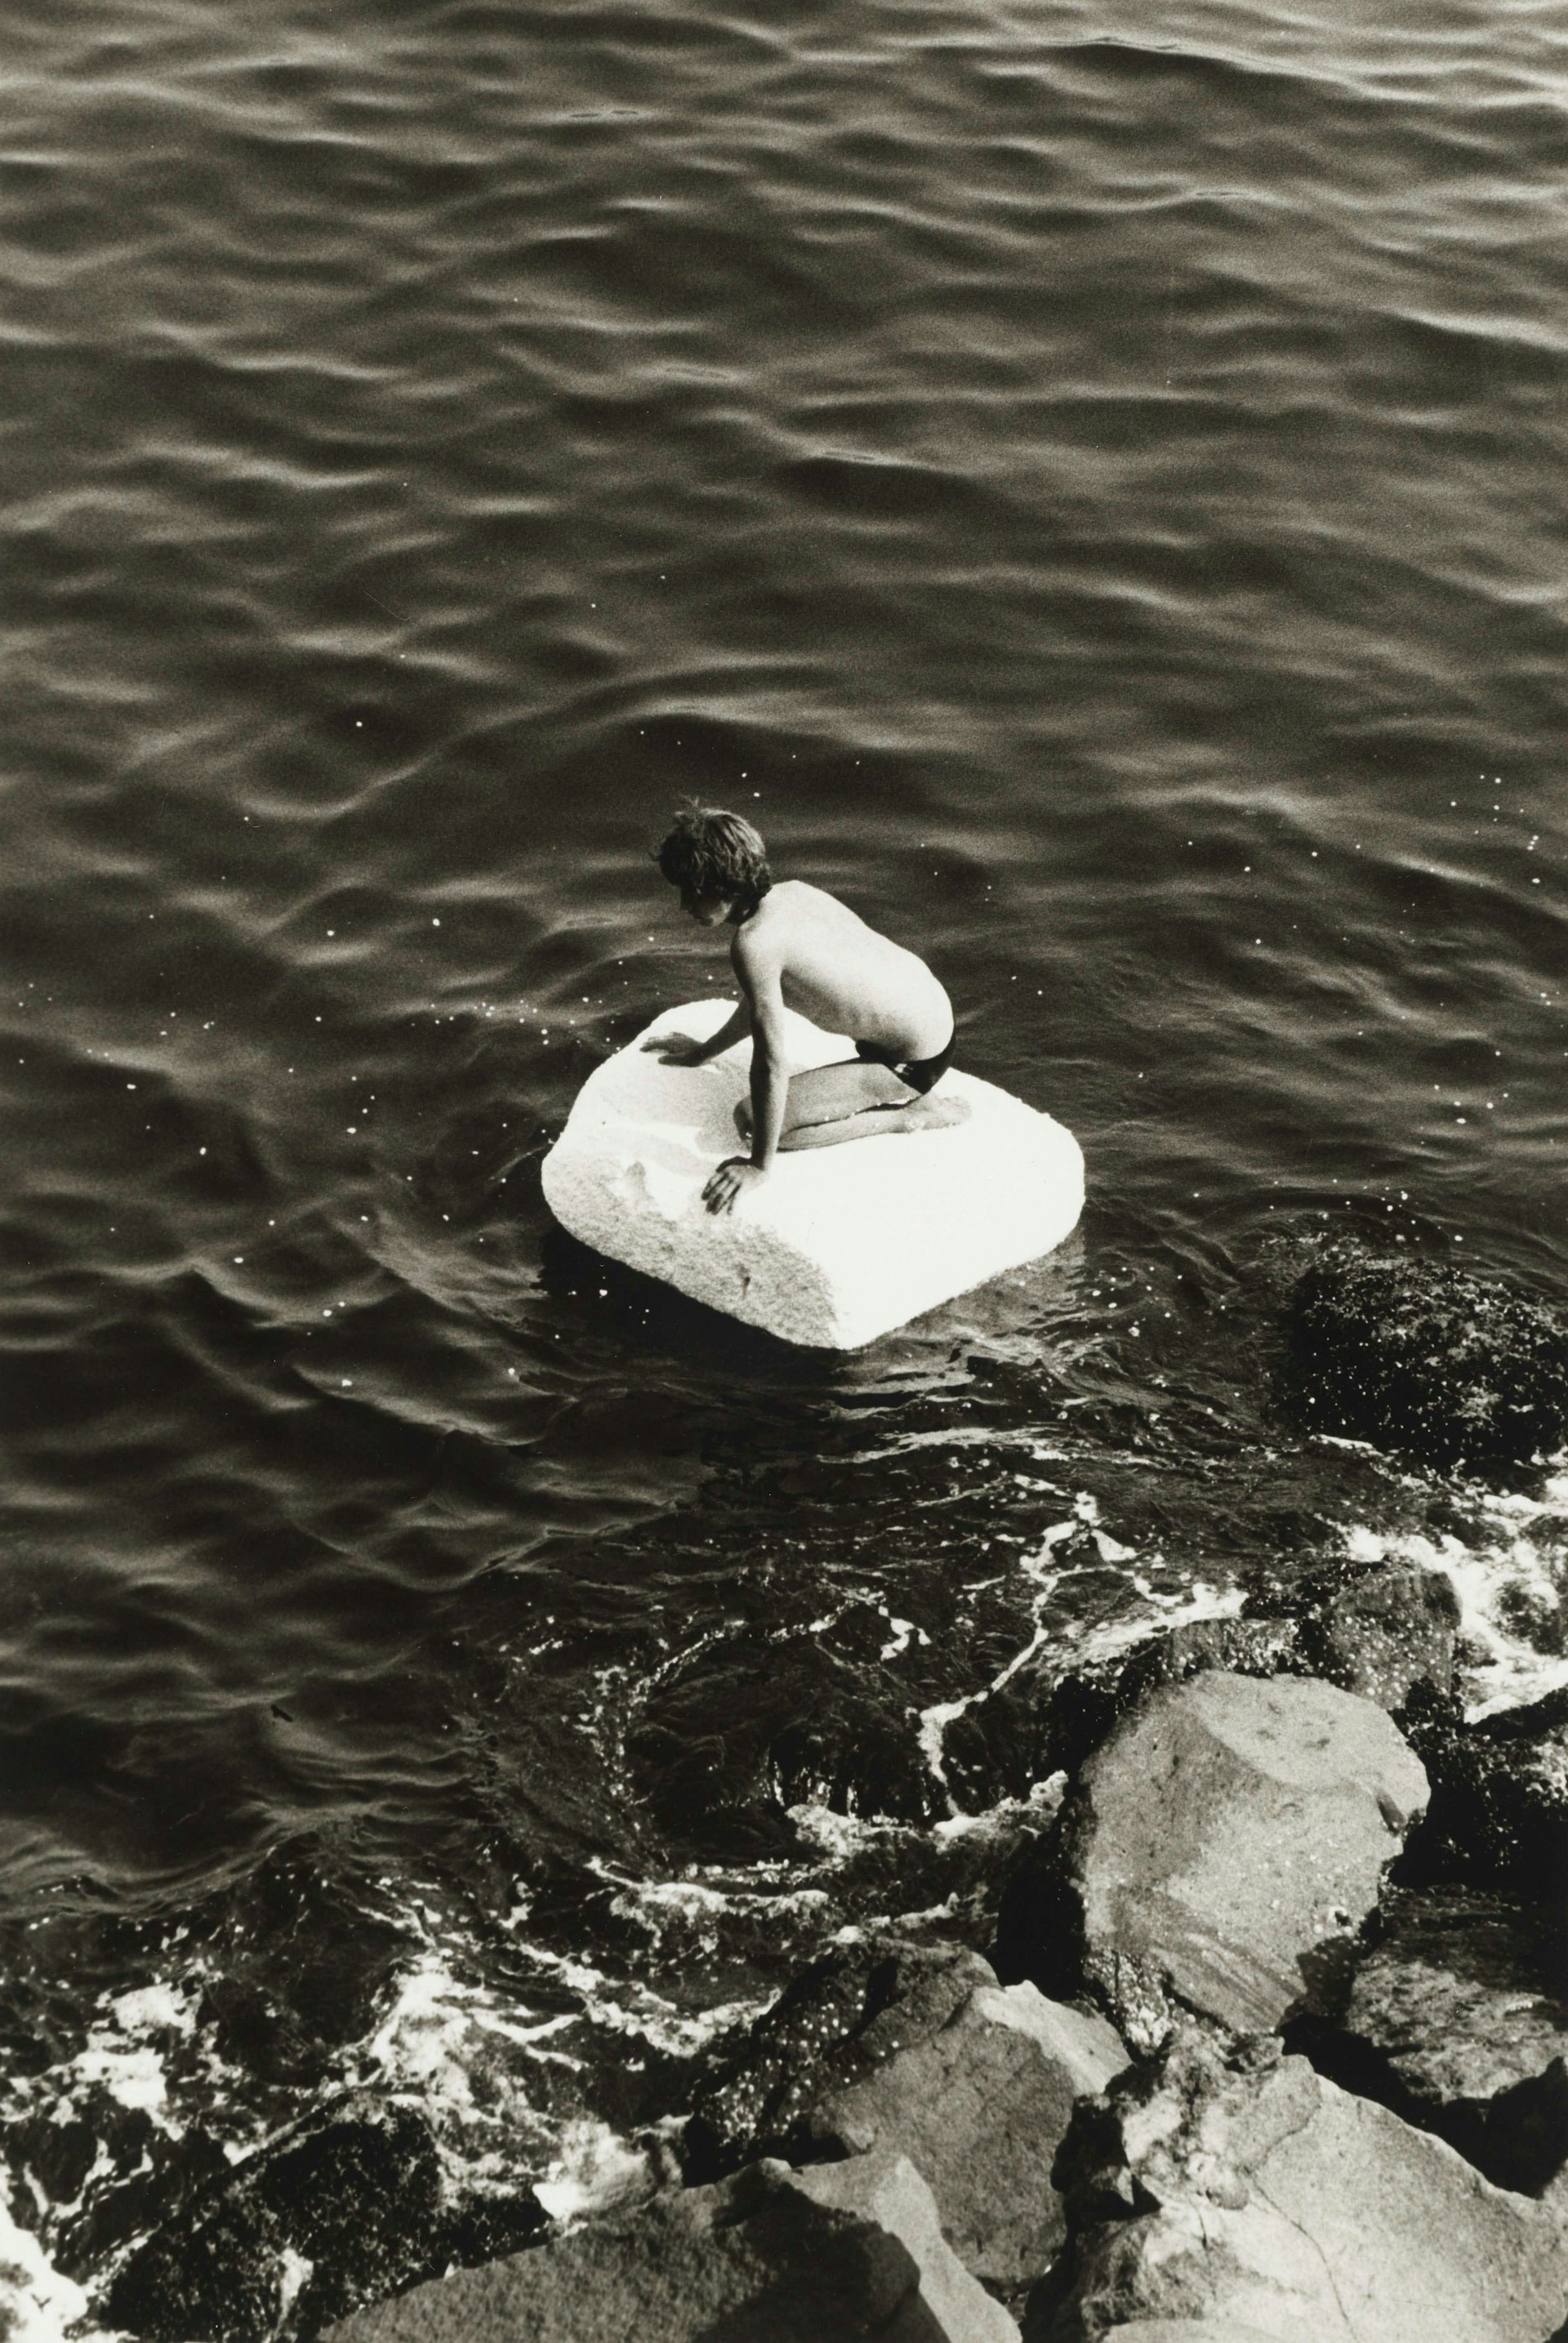 Boy on Raft, 1978